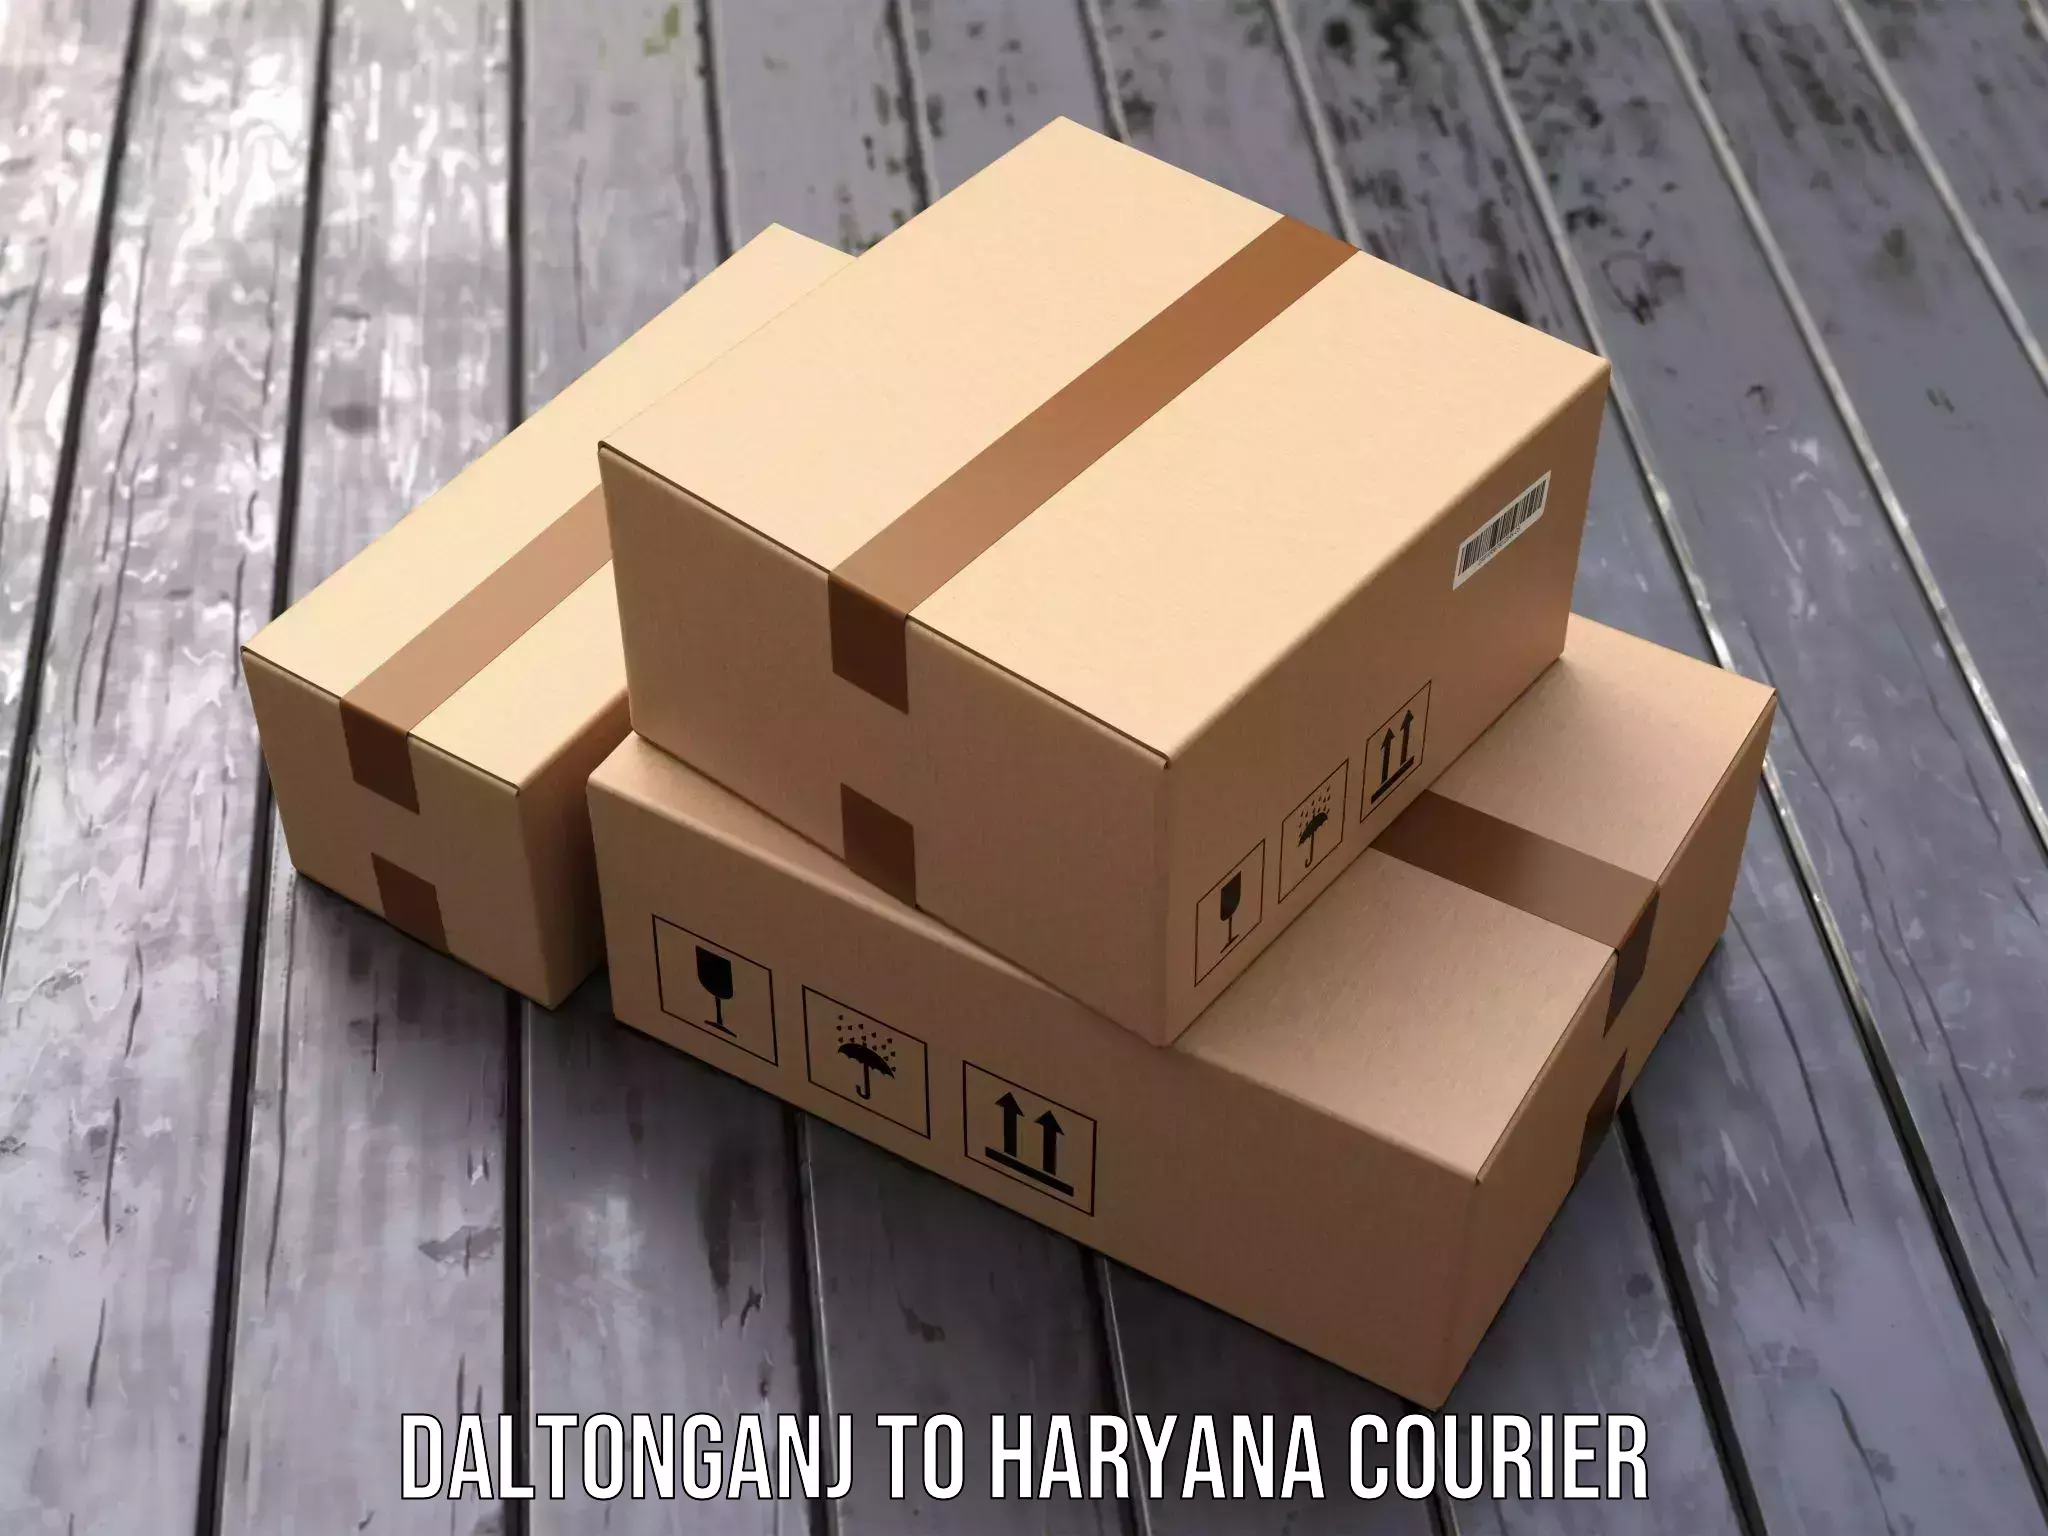 Subscription-based courier Daltonganj to Ambala